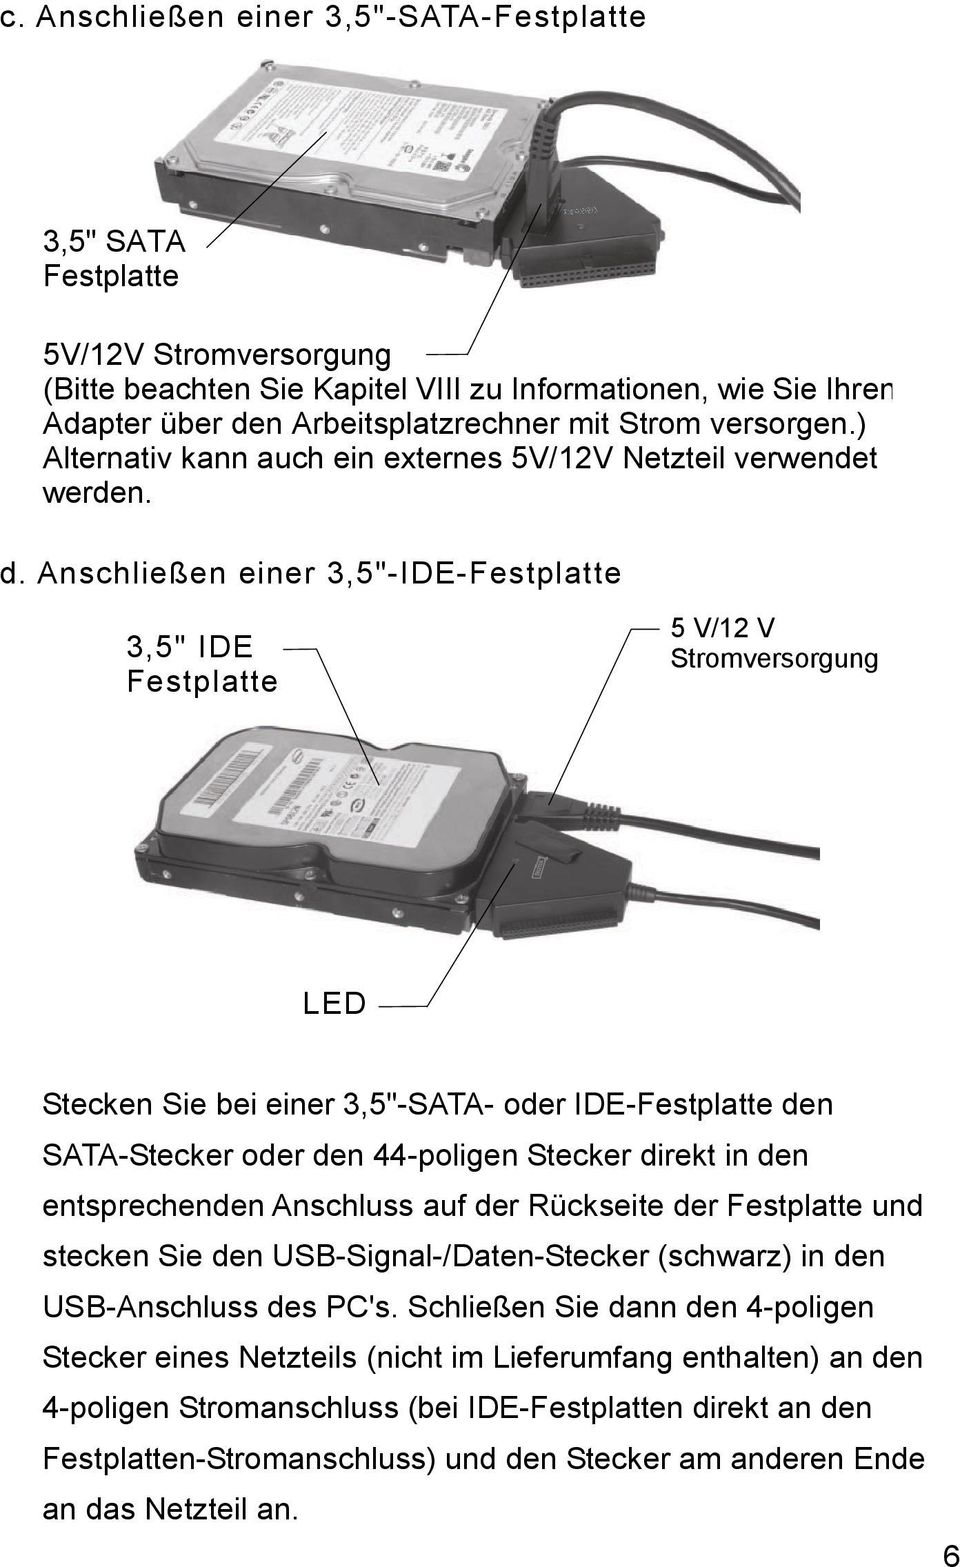 Anschließen einer 3,5"-IDE-Festplatte 3,5" IDE Festplatte 5 V/12 V Stromversorgung LED Stecken Sie bei einer 3,5"-SATA- oder IDE-Festplatte den SATA-Stecker oder den 44-poligen Stecker direkt in den